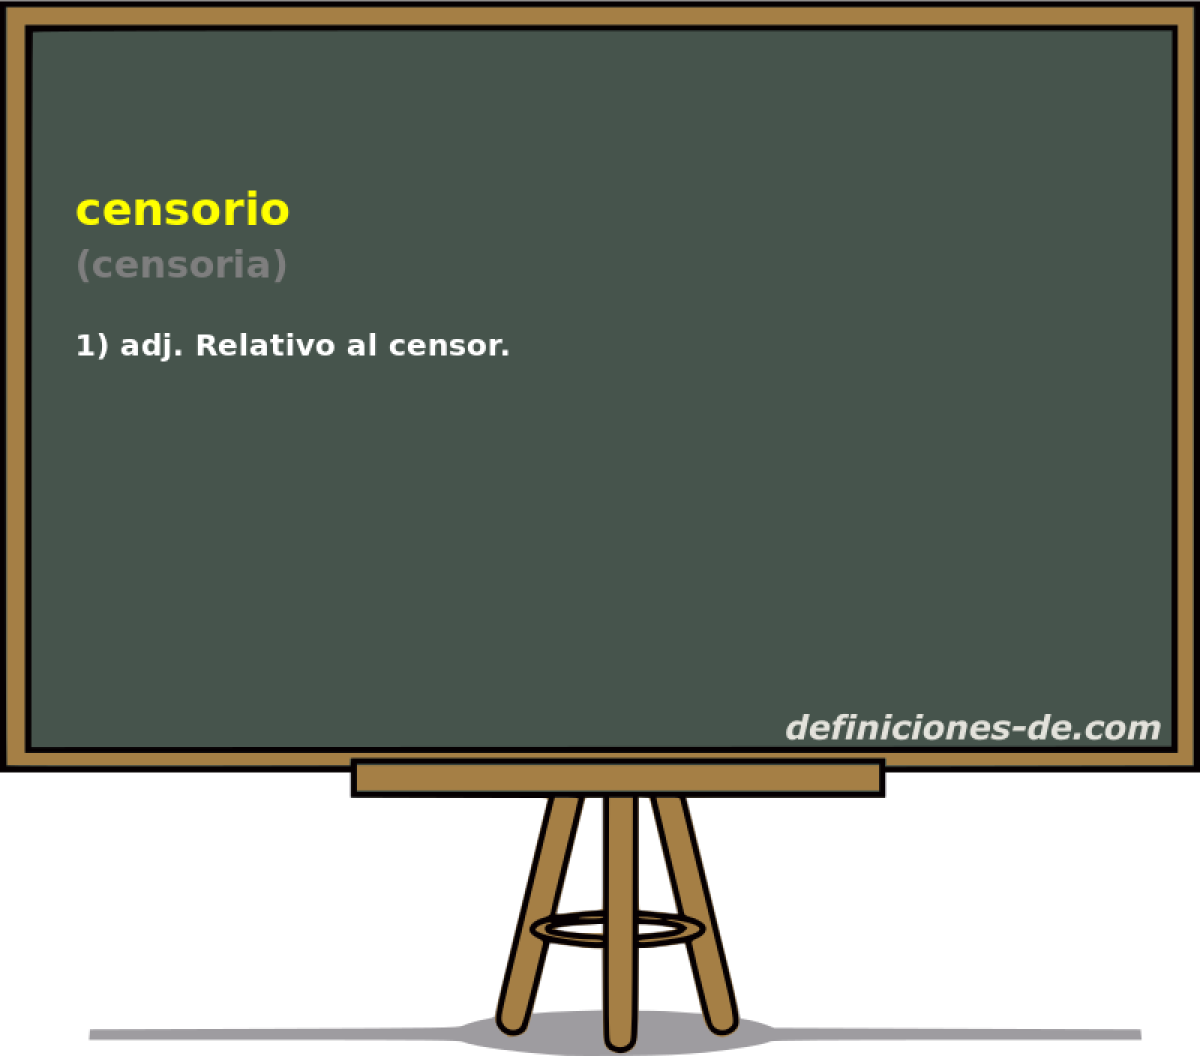 censorio (censoria)